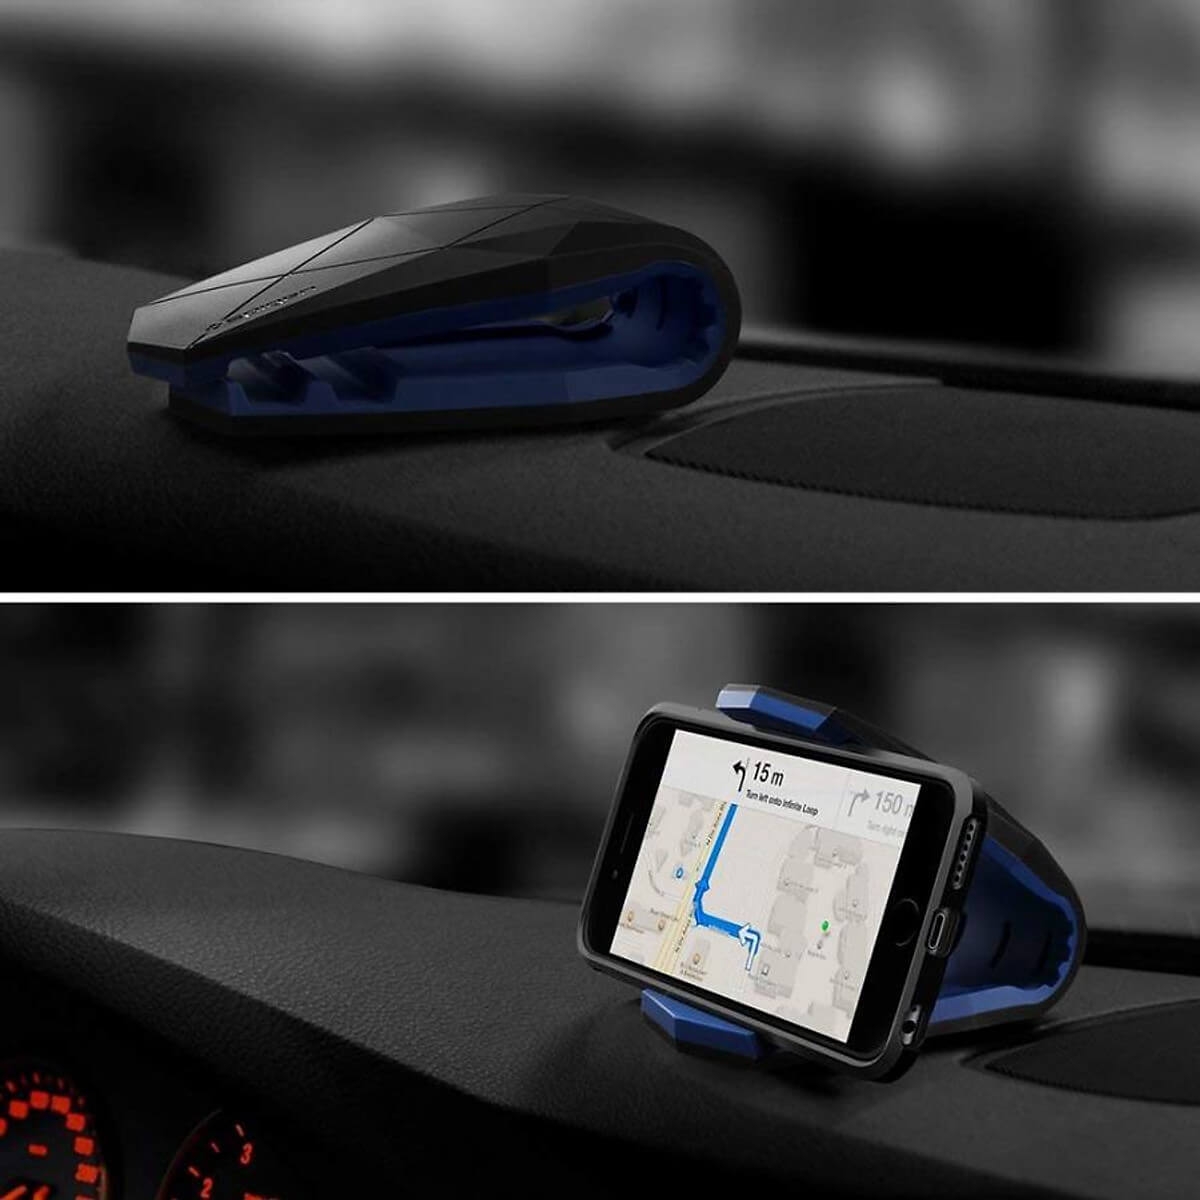 Giá Kẹp Smartphone Tablet Spigen Car Mount Stealth